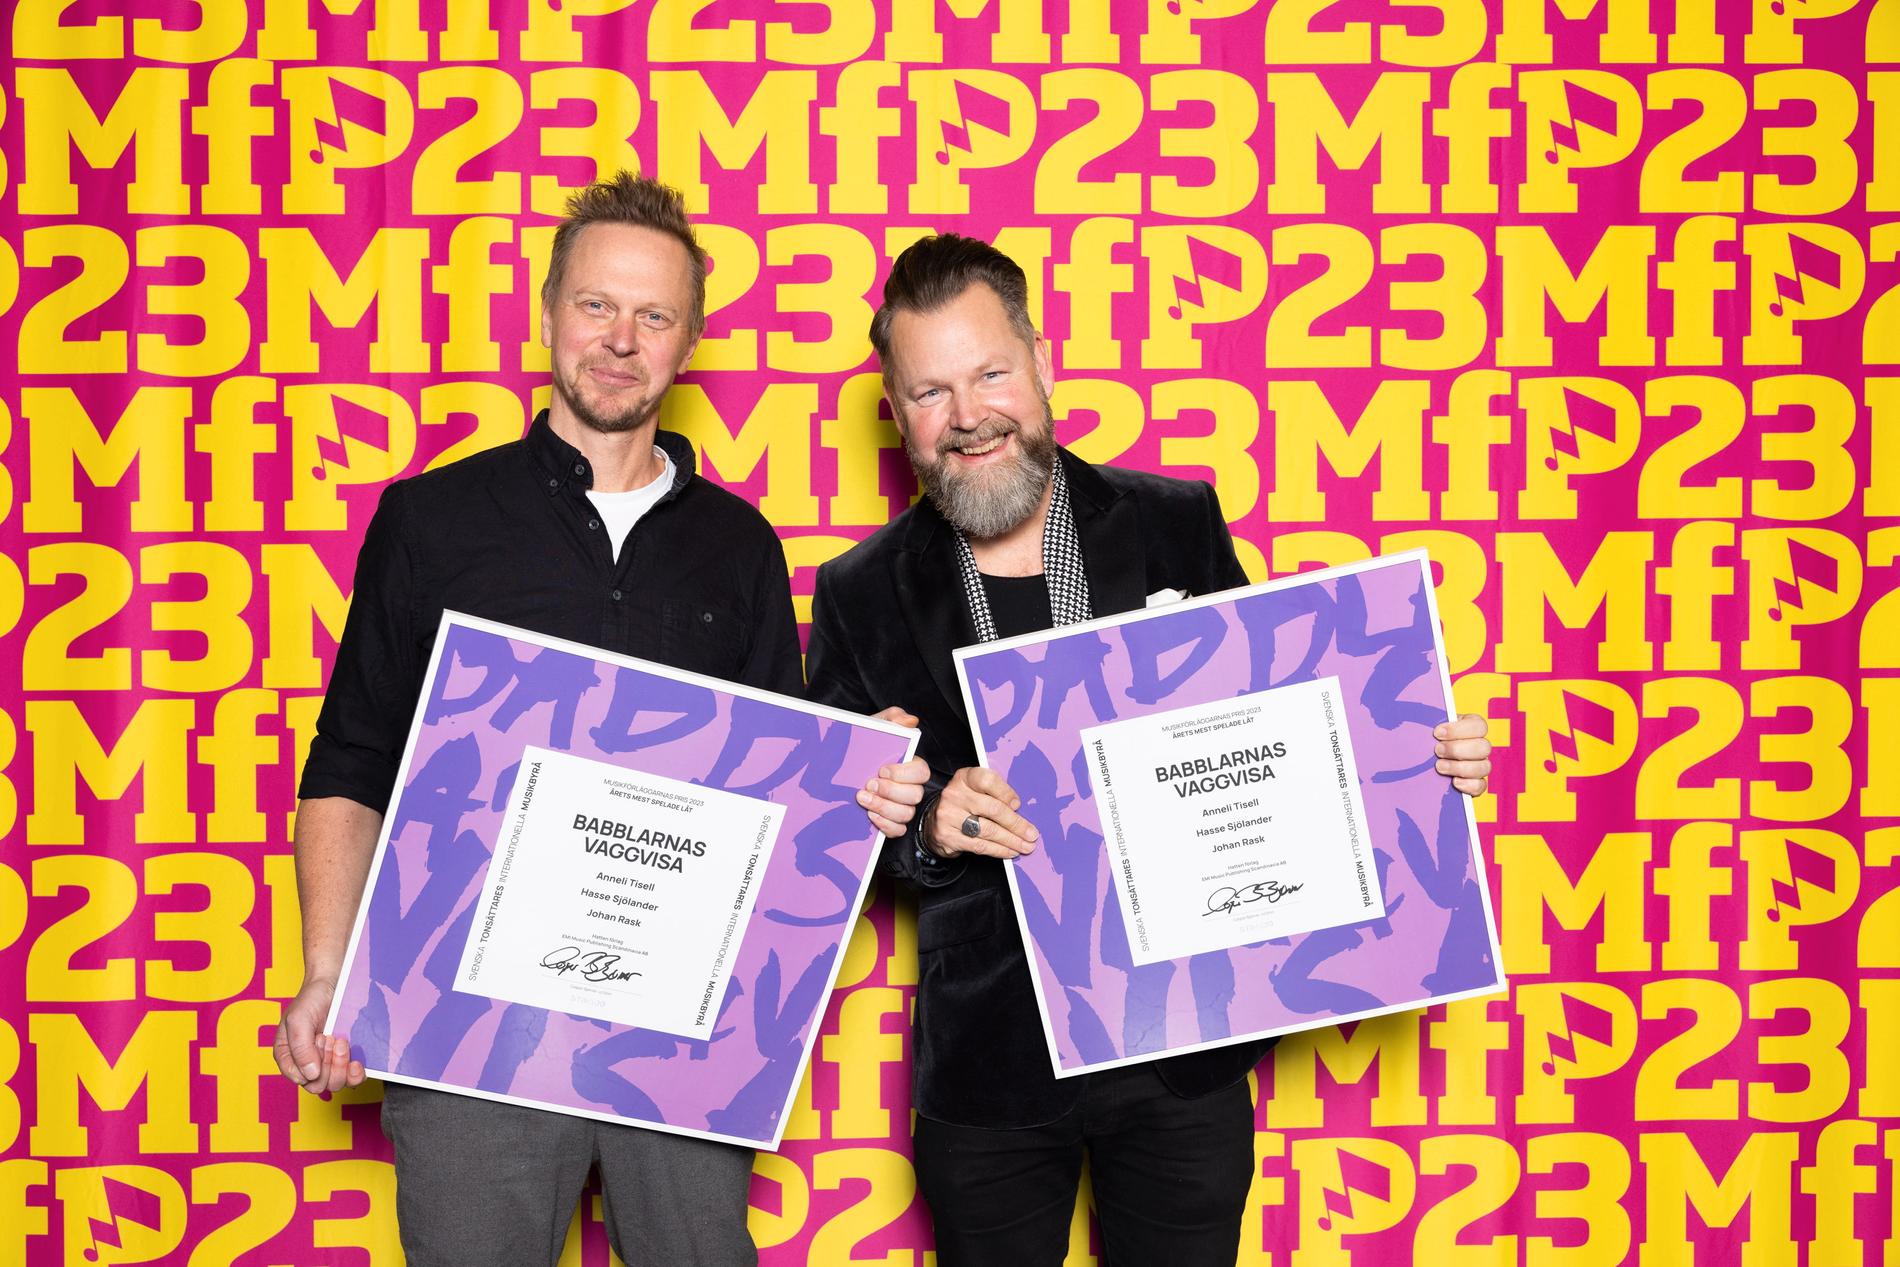 Johan Rask och Hans Sjölander tog emot diplom för årets mest spelade låt under 2022 på galan Musikförläggarnas pris. Pressbild.